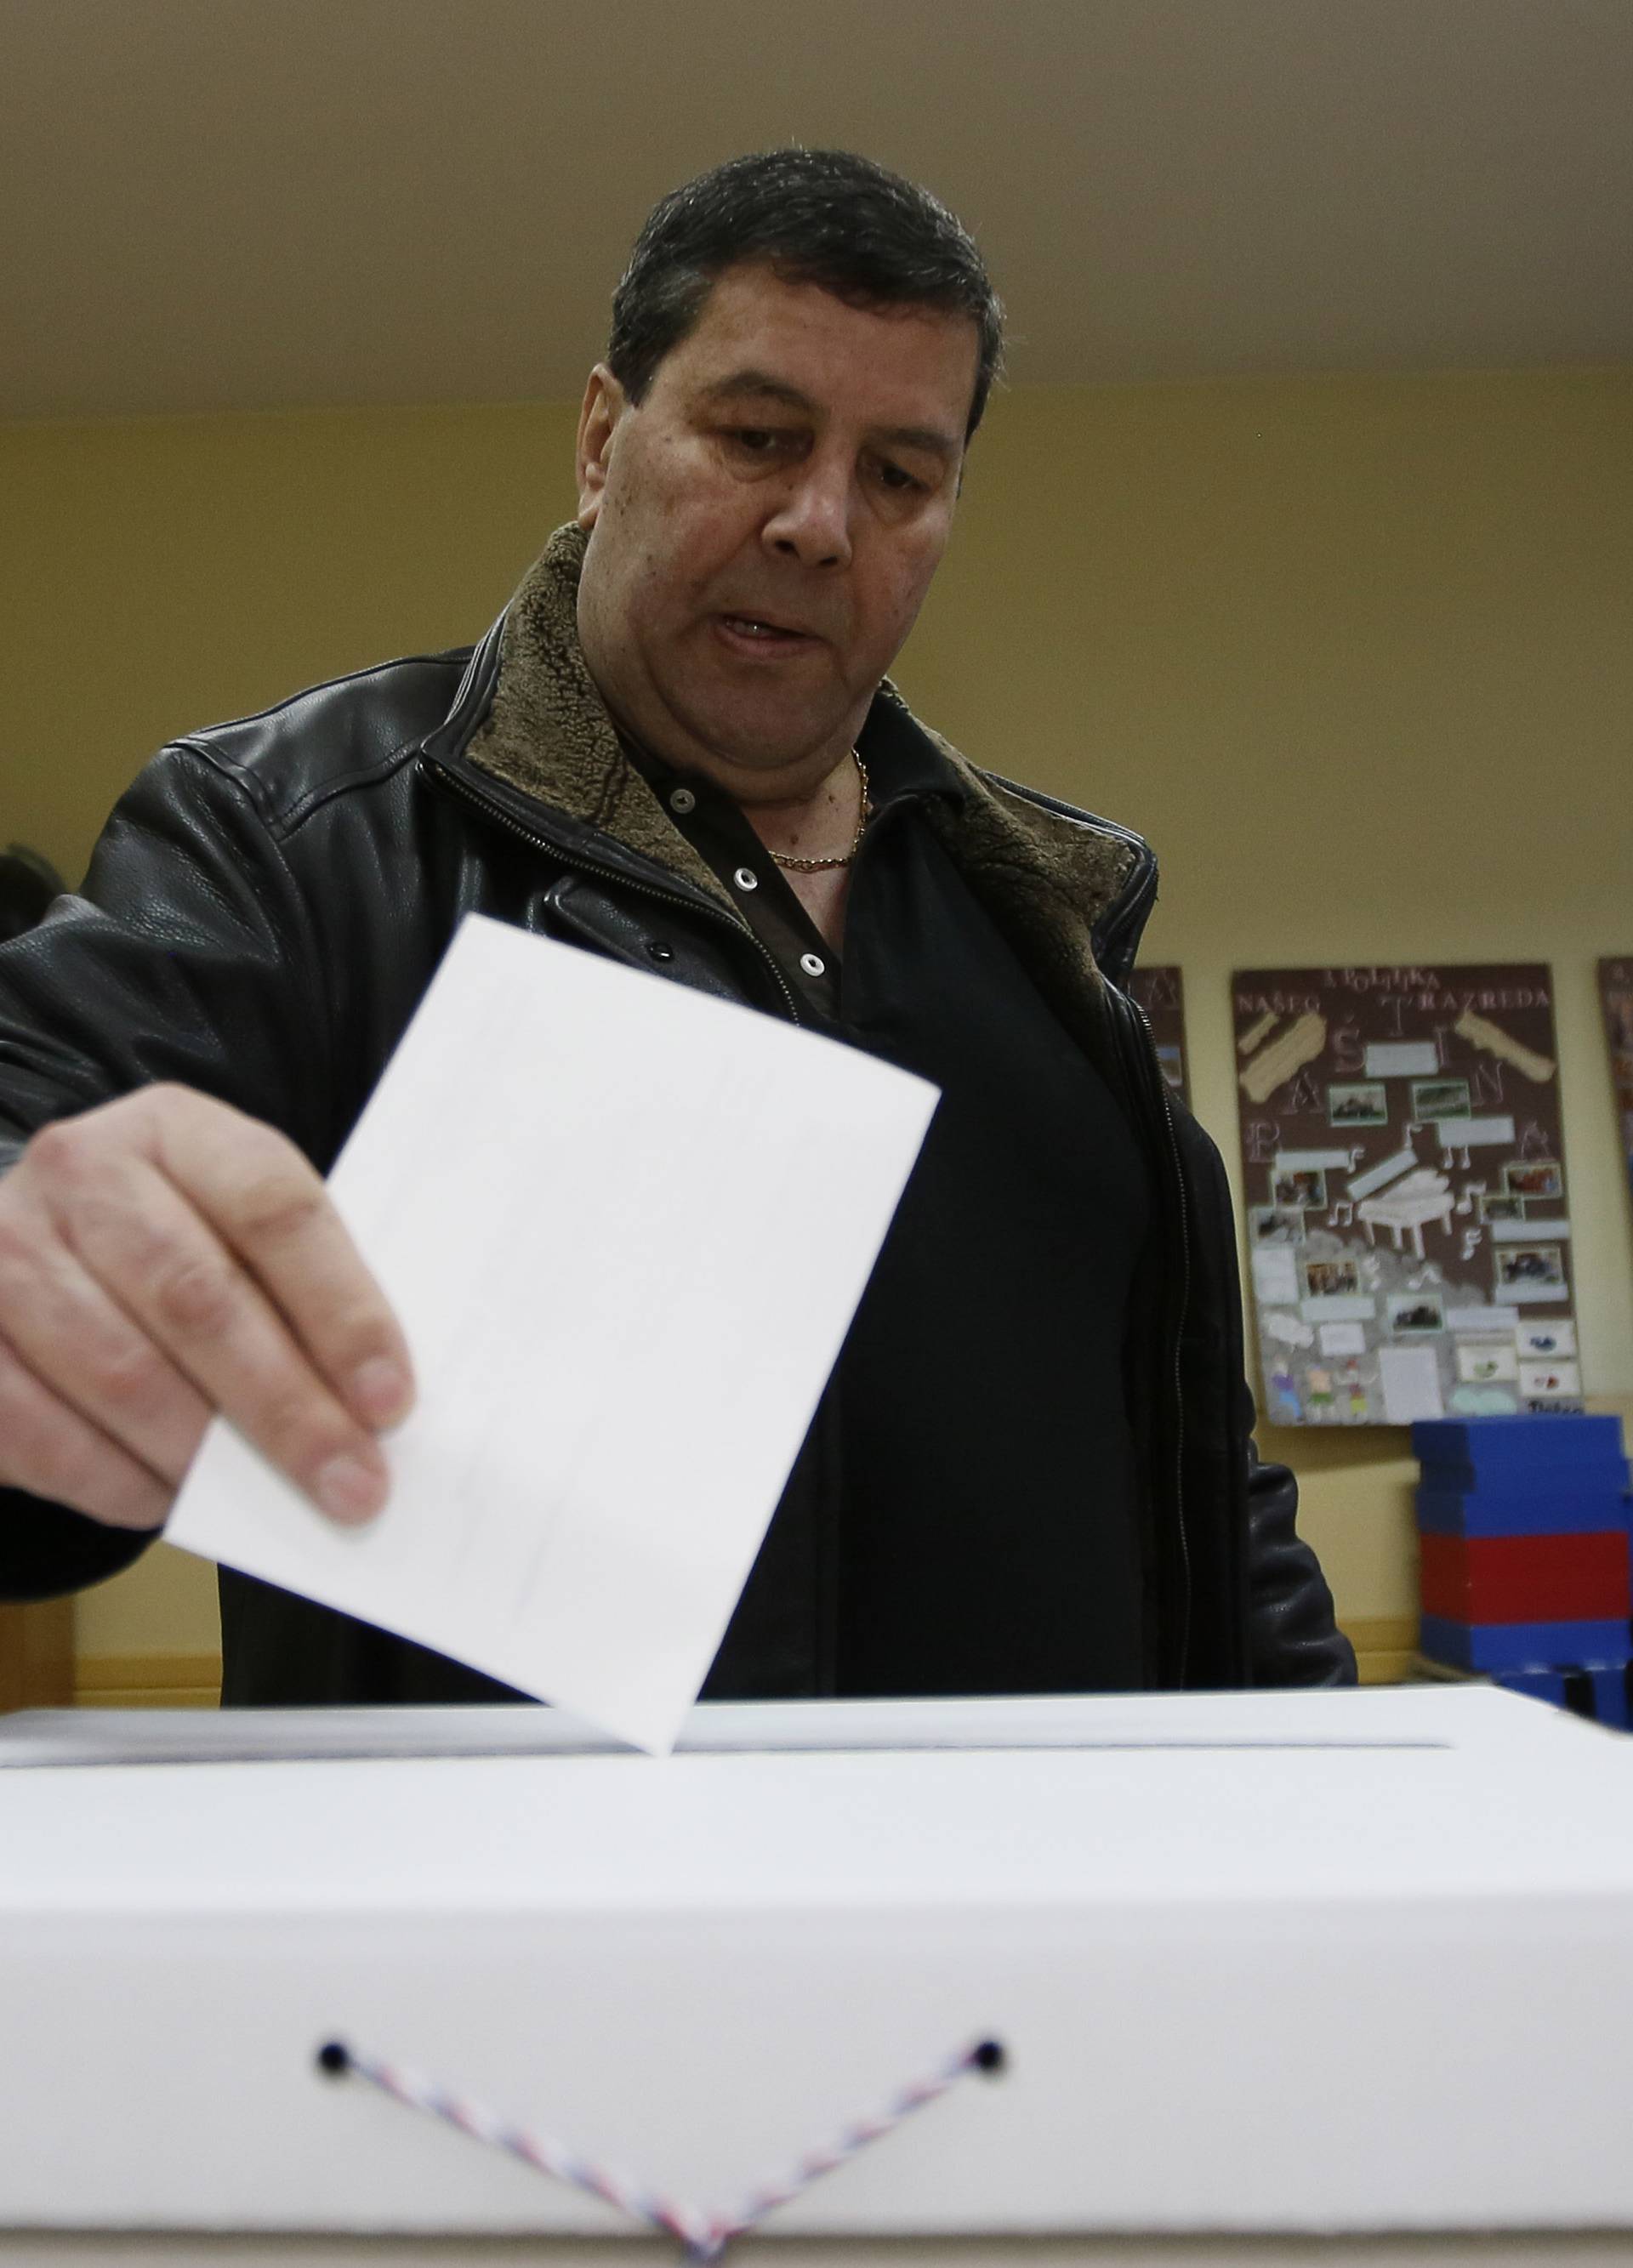 Izborni dan: Redovi u Mostaru, veća izlaznost, sumnjivi SMS...